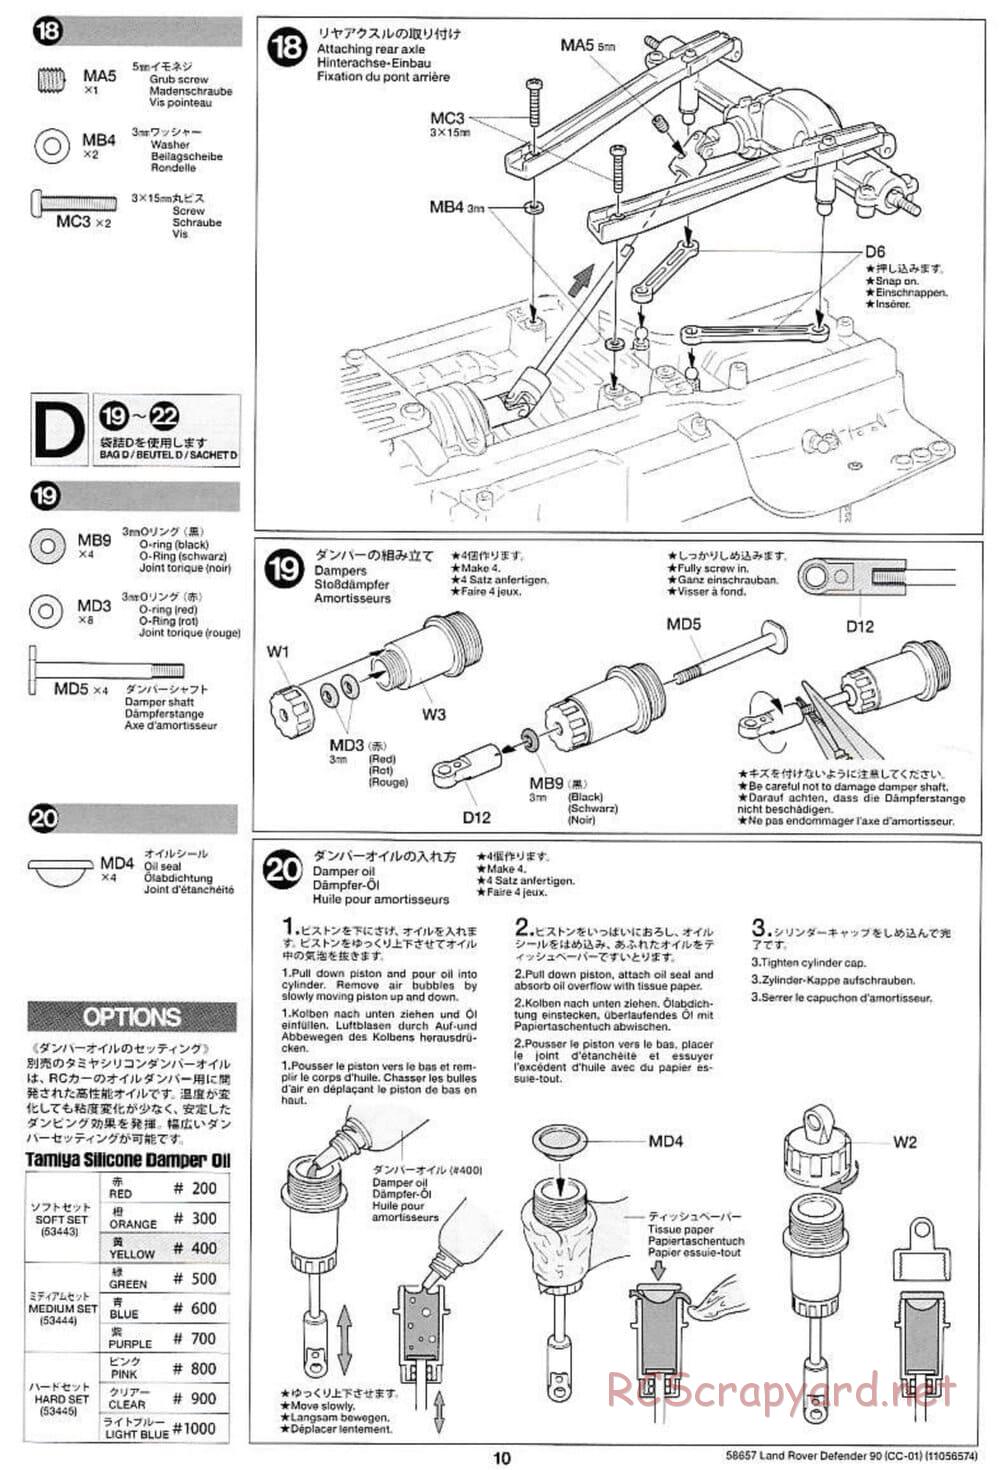 Tamiya - Land Rover Defender 90 - CC-01 Chassis - Manual - Page 10